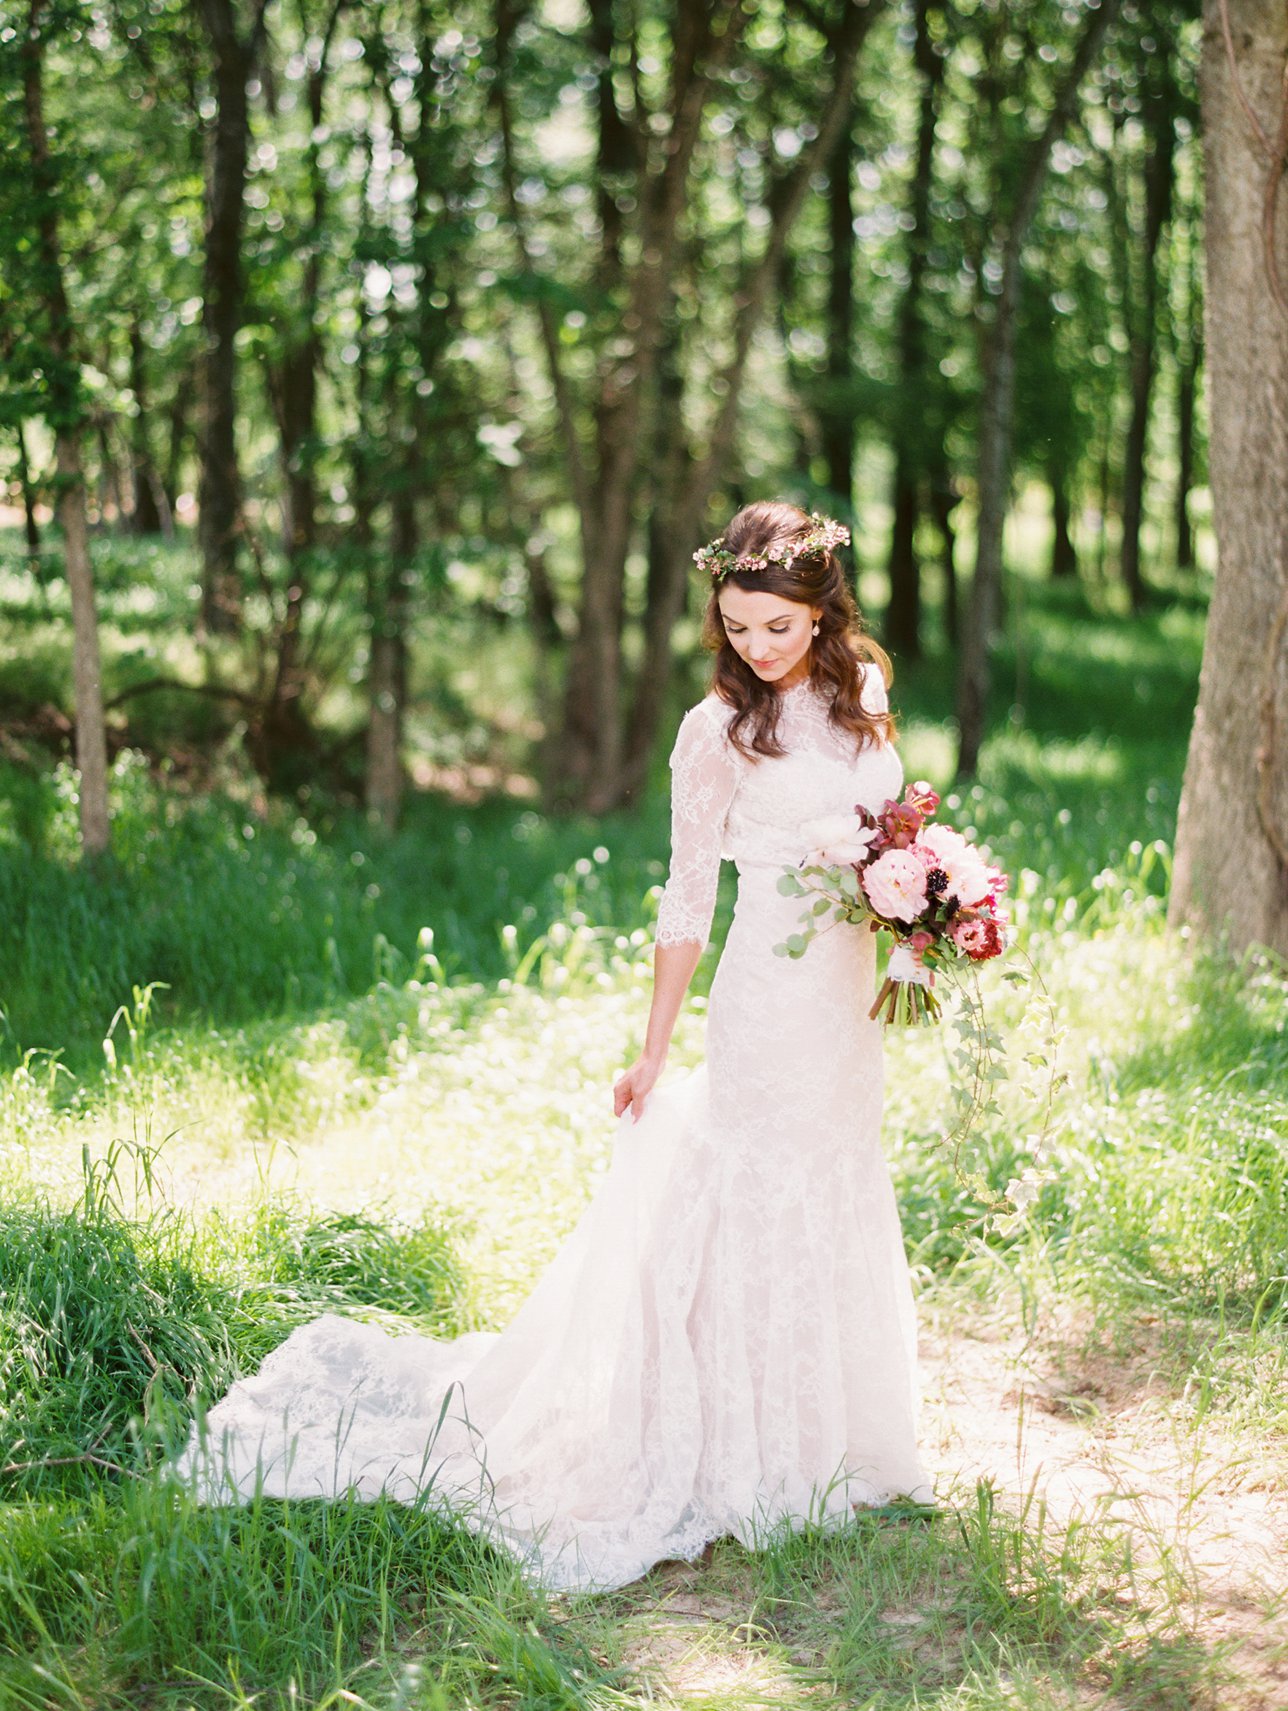 Bridlewood of Madison Wedding Photos - Mississippi Wedding Photographer - Rachel Solomon Photography